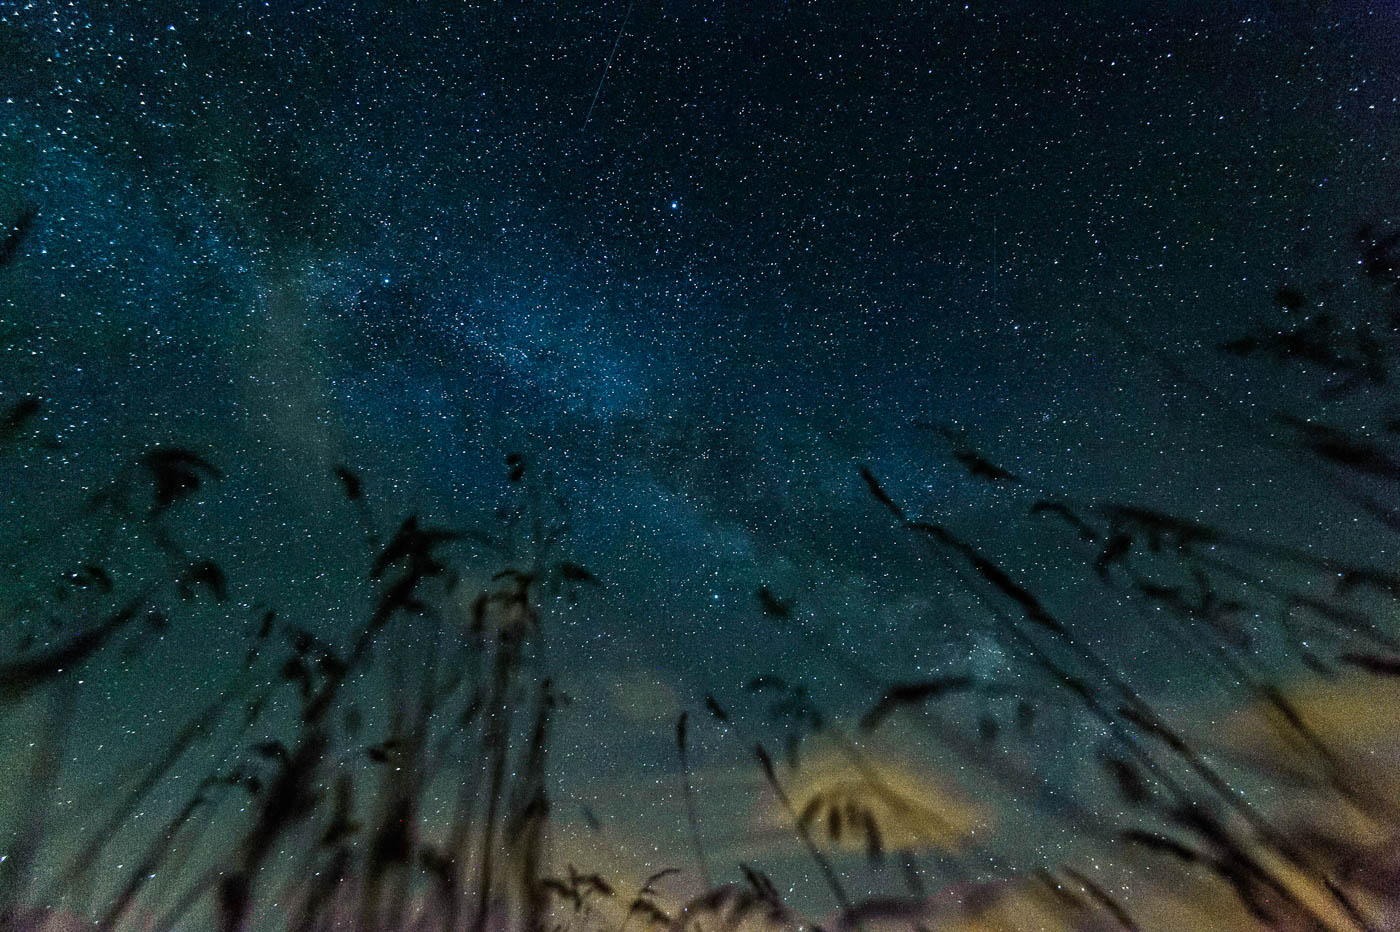 Balmazújváros, 2015. július 13. A Tejút fényes sávja látható a Hortobágy feletti égbolton Balmazújváros térségéből fotózva 2015. július 12-én este. MTI Fotó: Czeglédi Zsolt